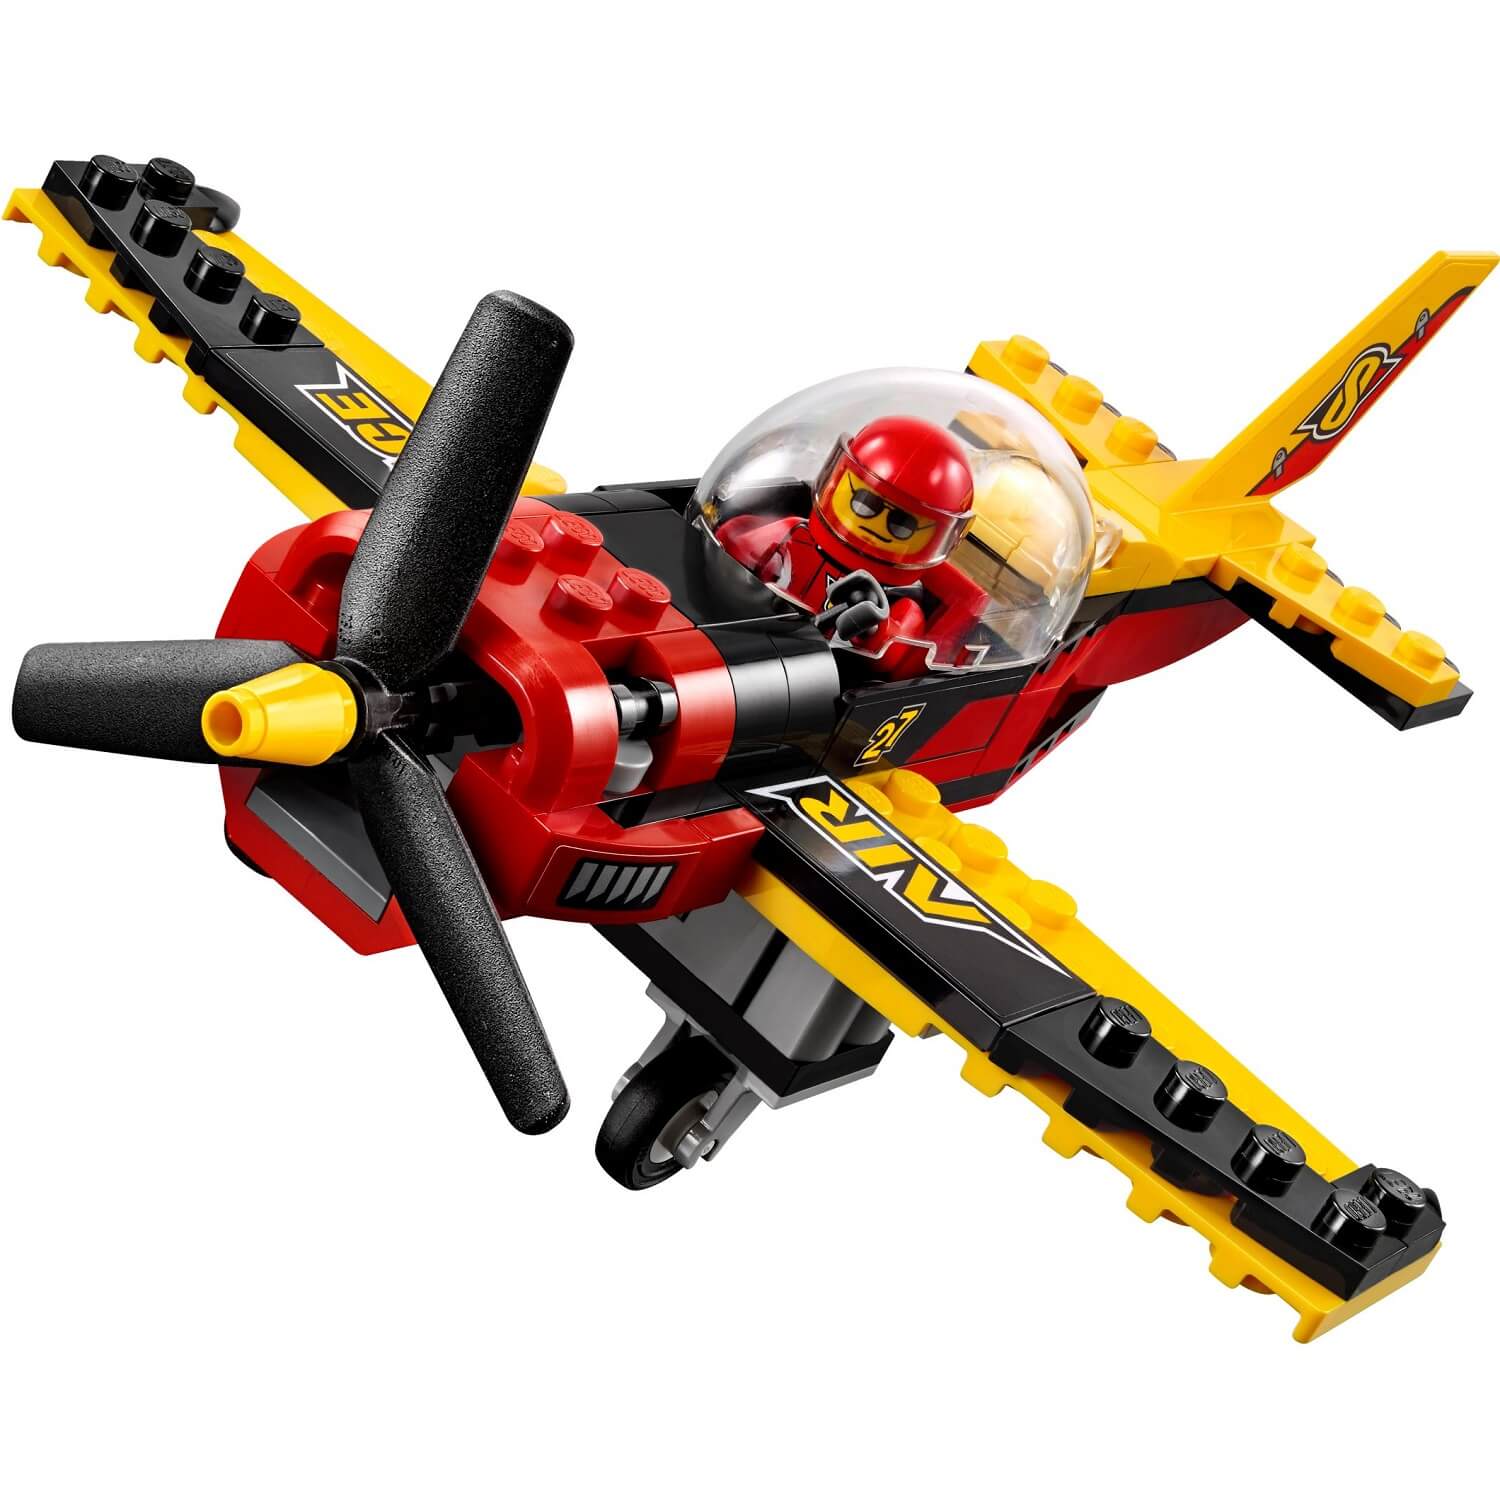 Avión carreras ( Lego 60144 ) imagen b